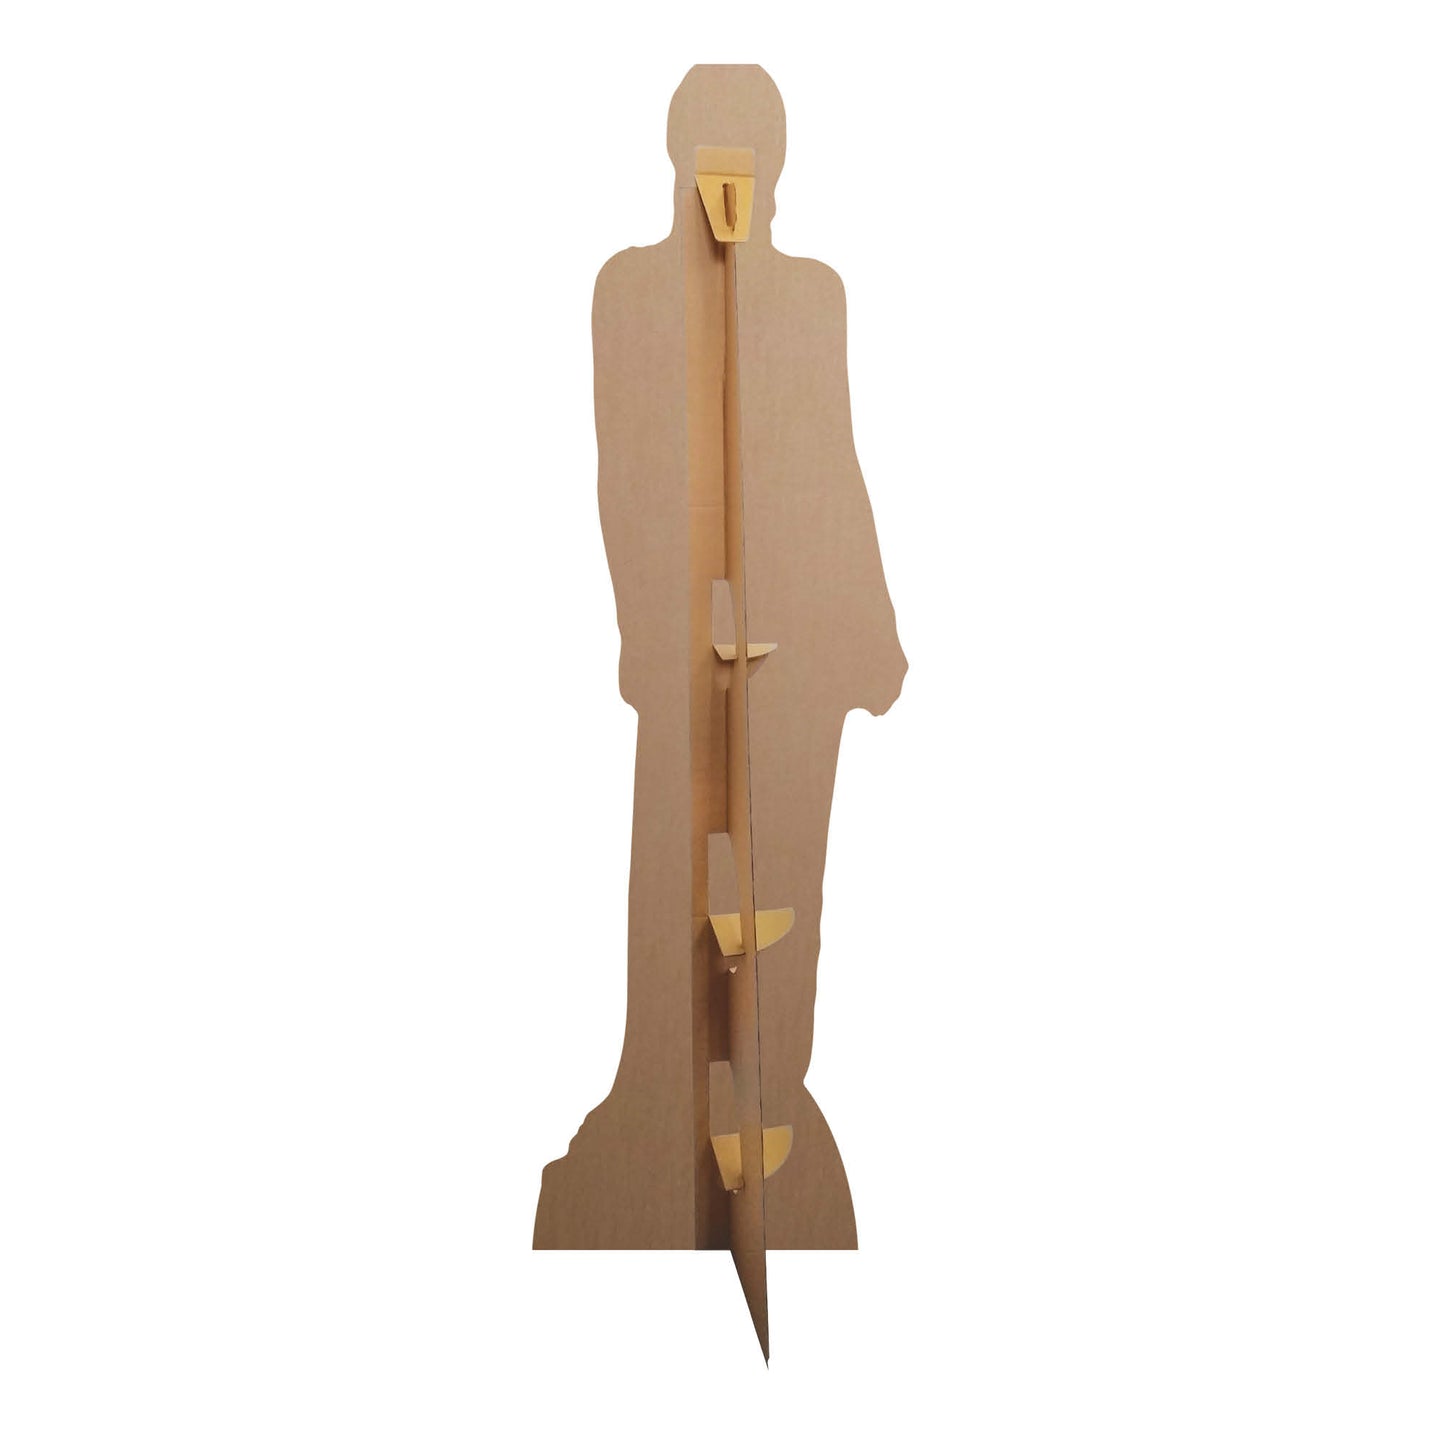 CS779 Zendaya Dancer Singer Actress Height 181cm Lifesize Cardboard Cut Out With Mini